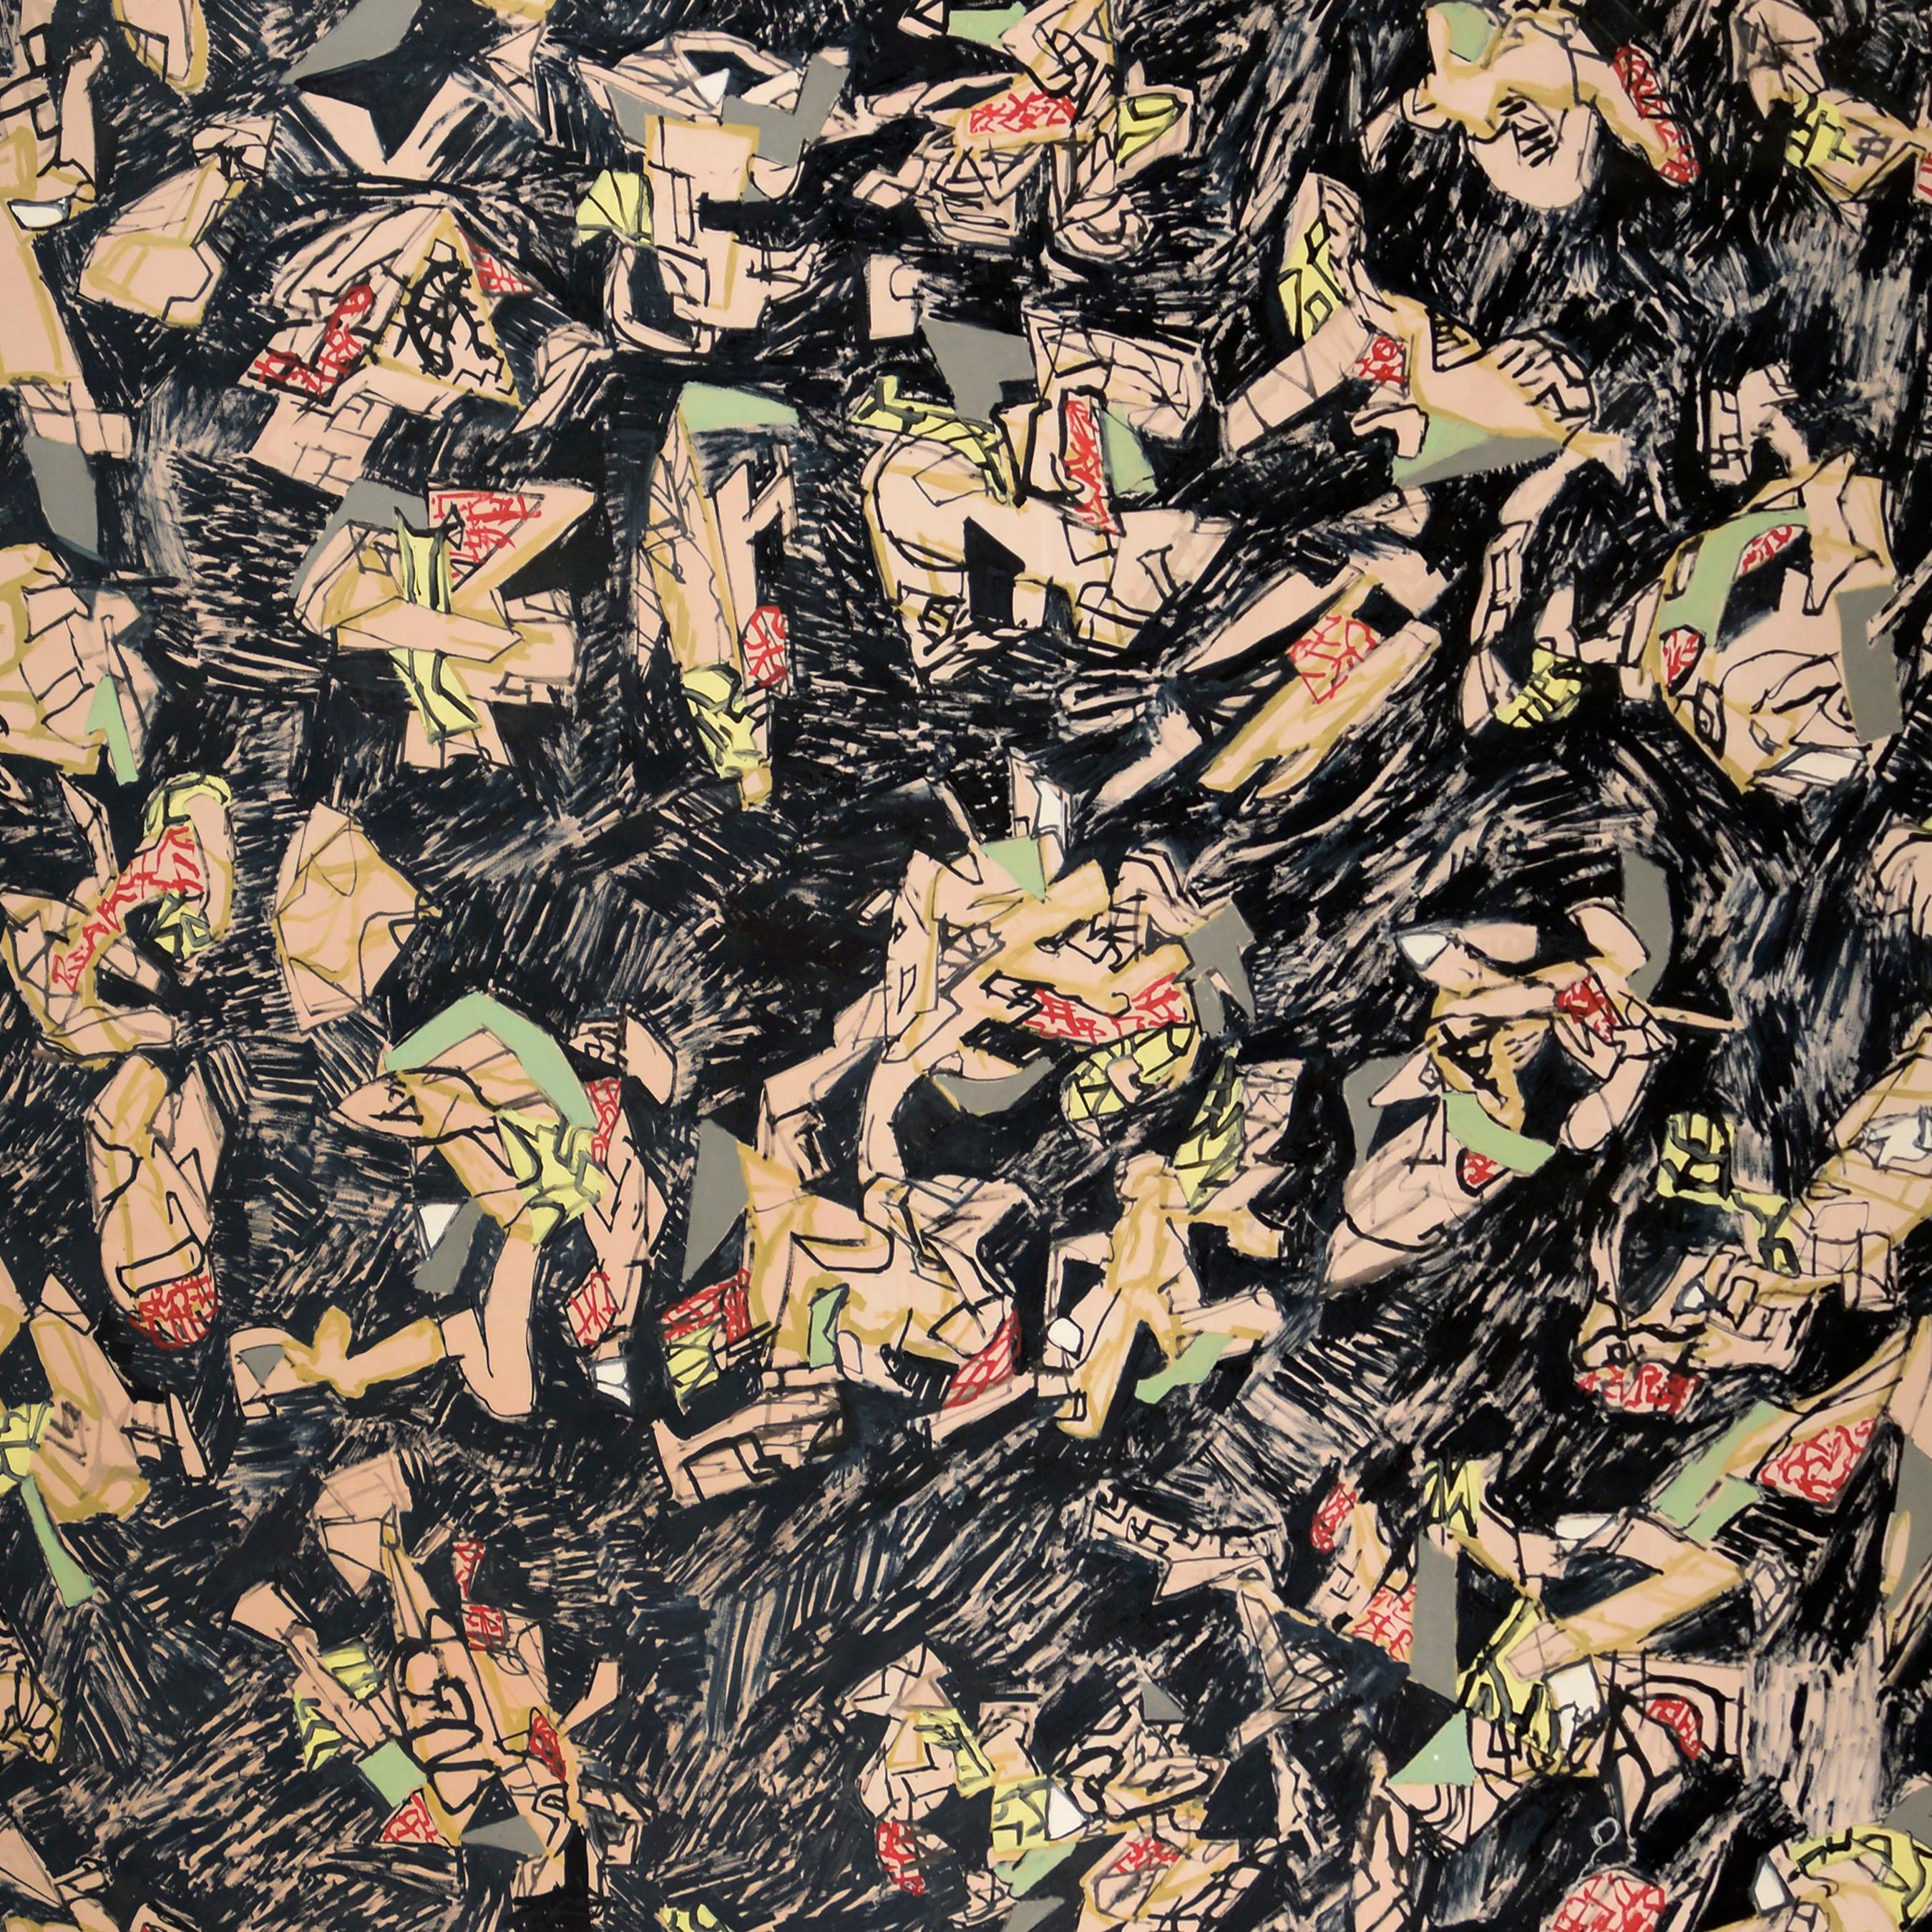 « Telephone Doodles », abstrait géométrique contemporain à grande échelle sur noir - Painting de Michael Pauker 